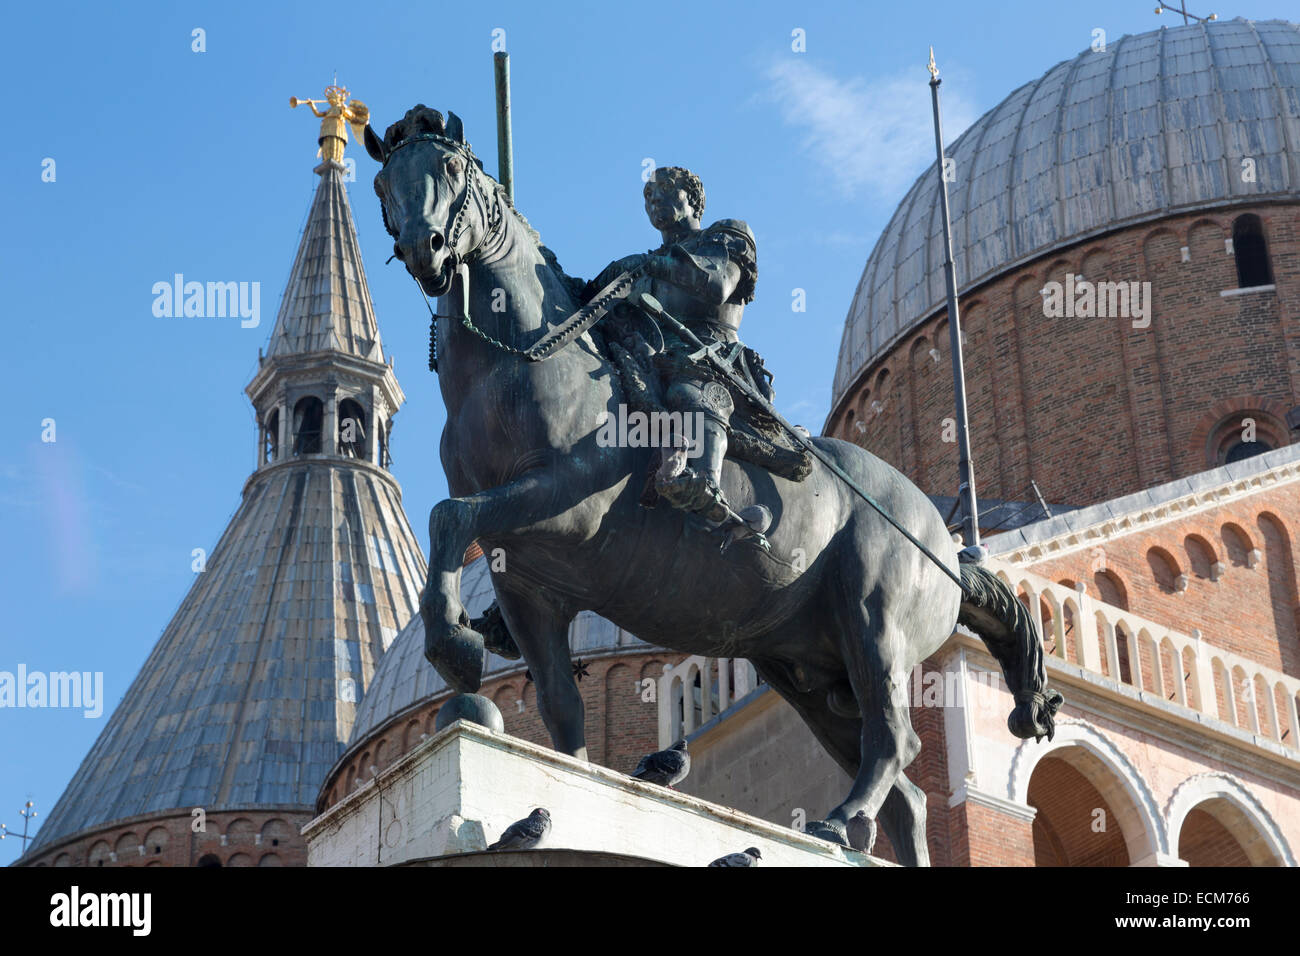 Equestrian Statue of Gattamelata by Donatello, 1453, Piazza del Santo, Padua, Italy Stock Photo